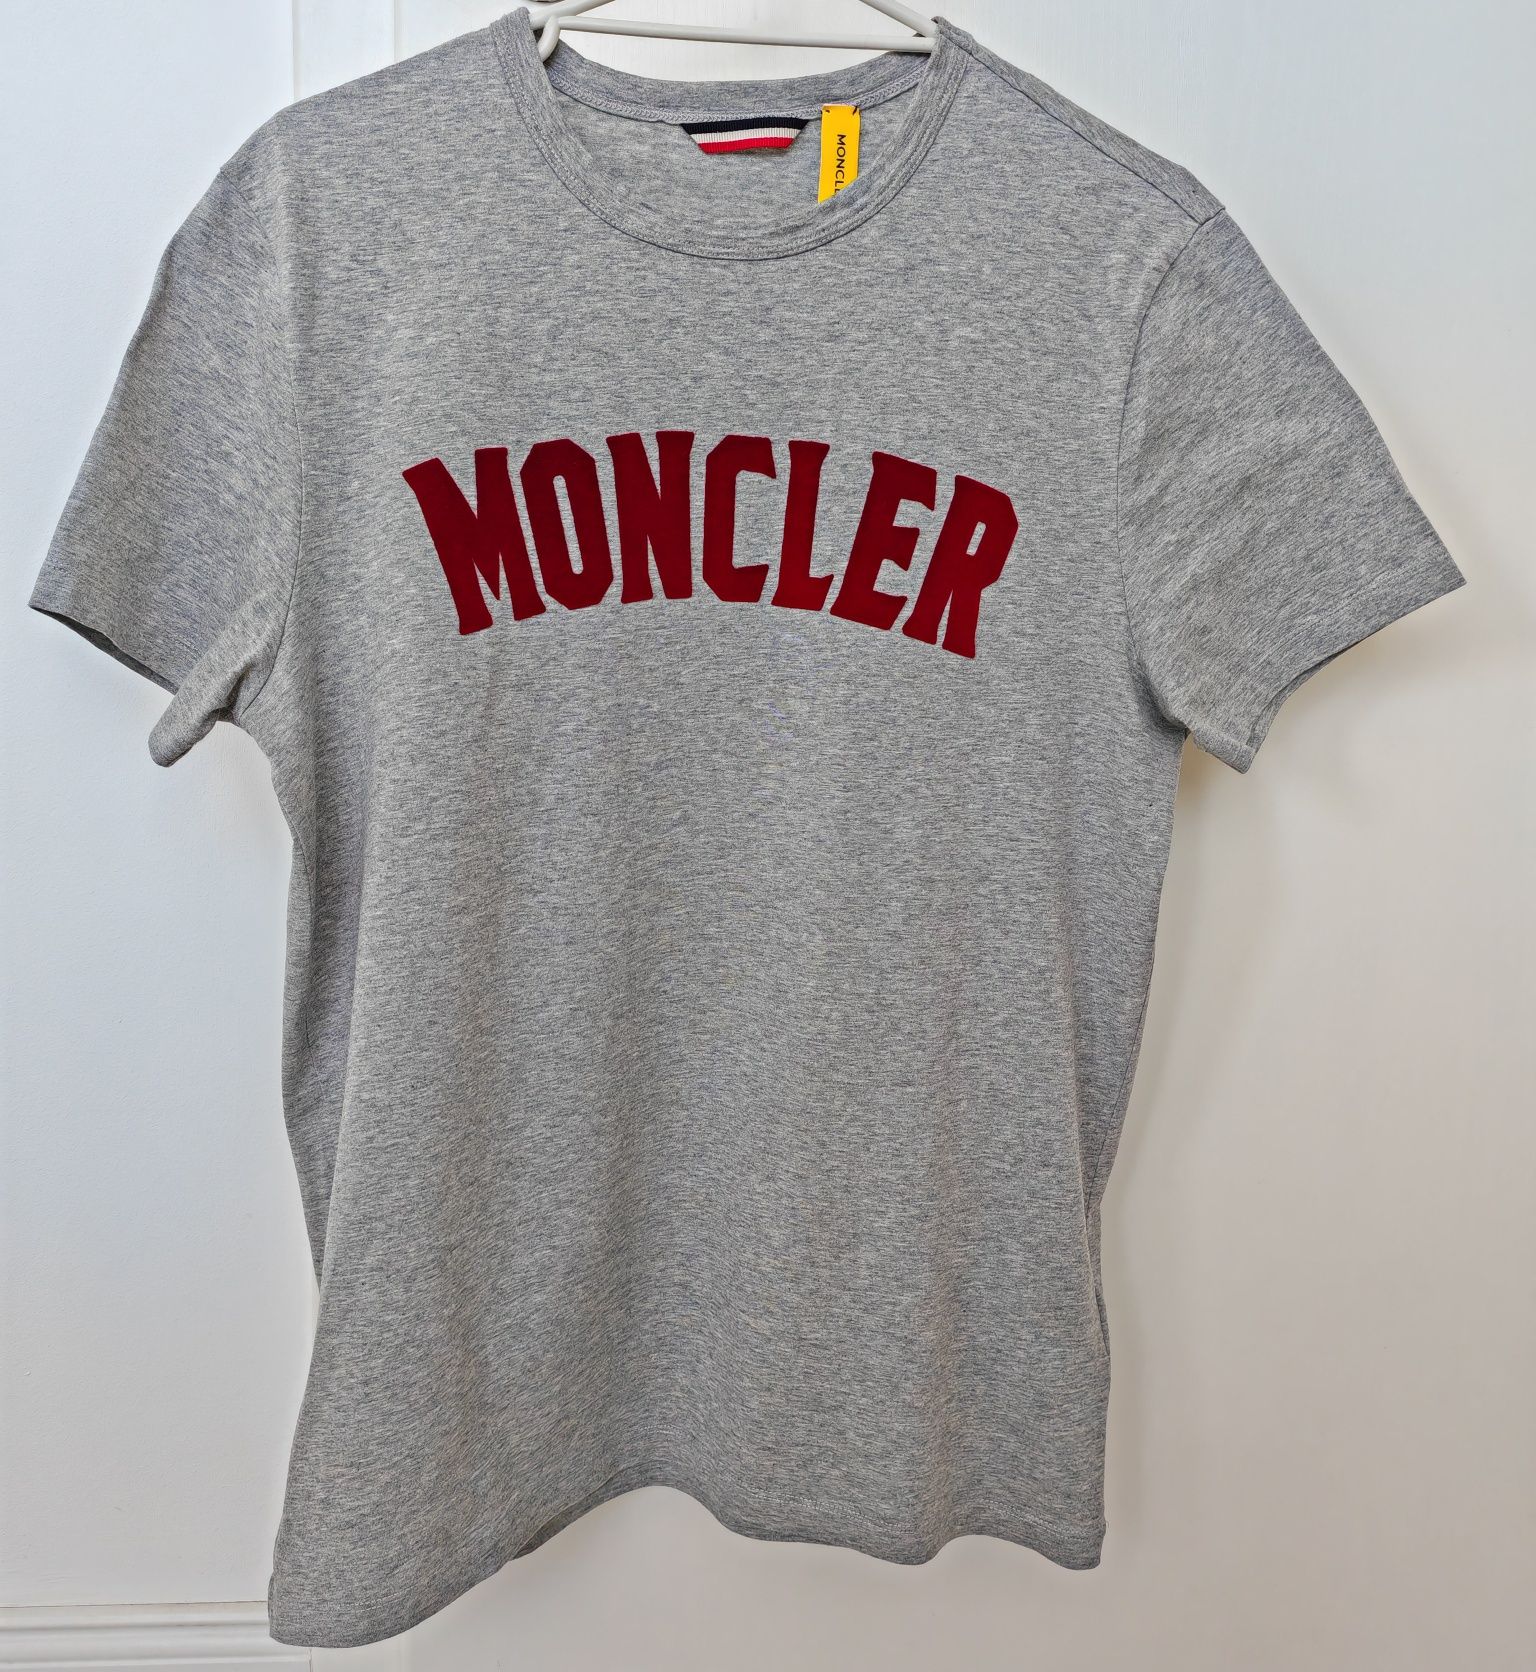 Vând tricou Moncler autentic